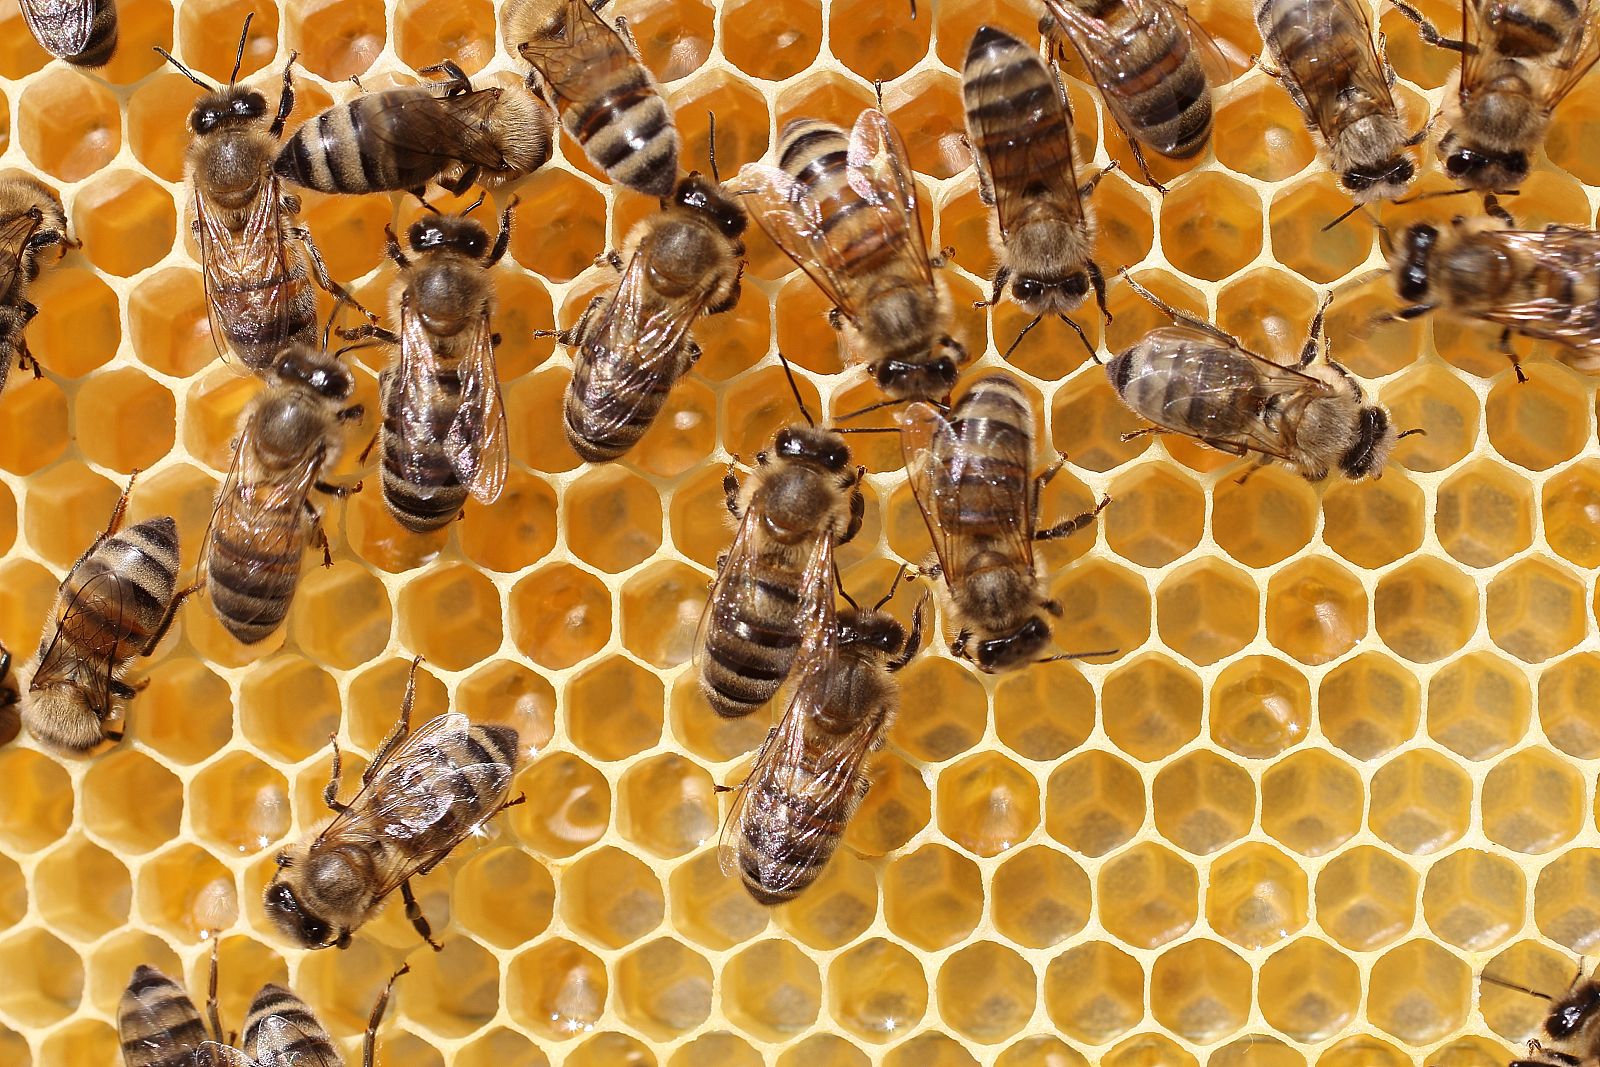 El estrés en las abejas explicaría el colapso de colmenas